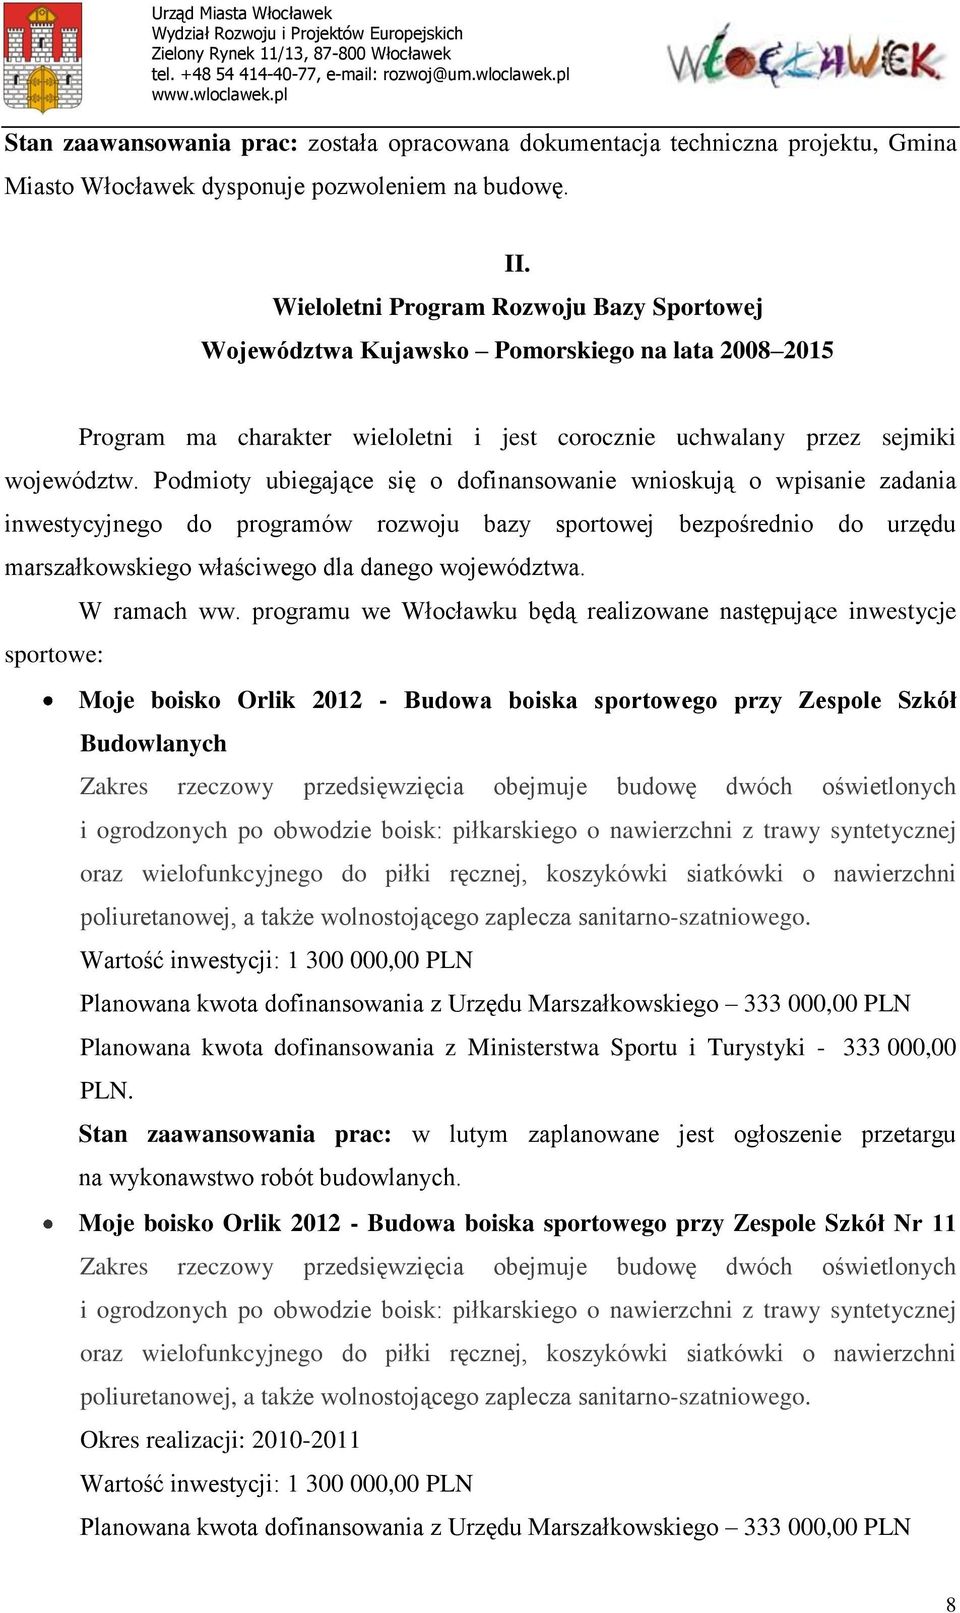 Podmioty ubiegające się o dofinansowanie wnioskują o wpisanie zadania inwestycyjnego do programów rozwoju bazy sportowej bezpośrednio do urzędu marszałkowskiego właściwego dla danego województwa.